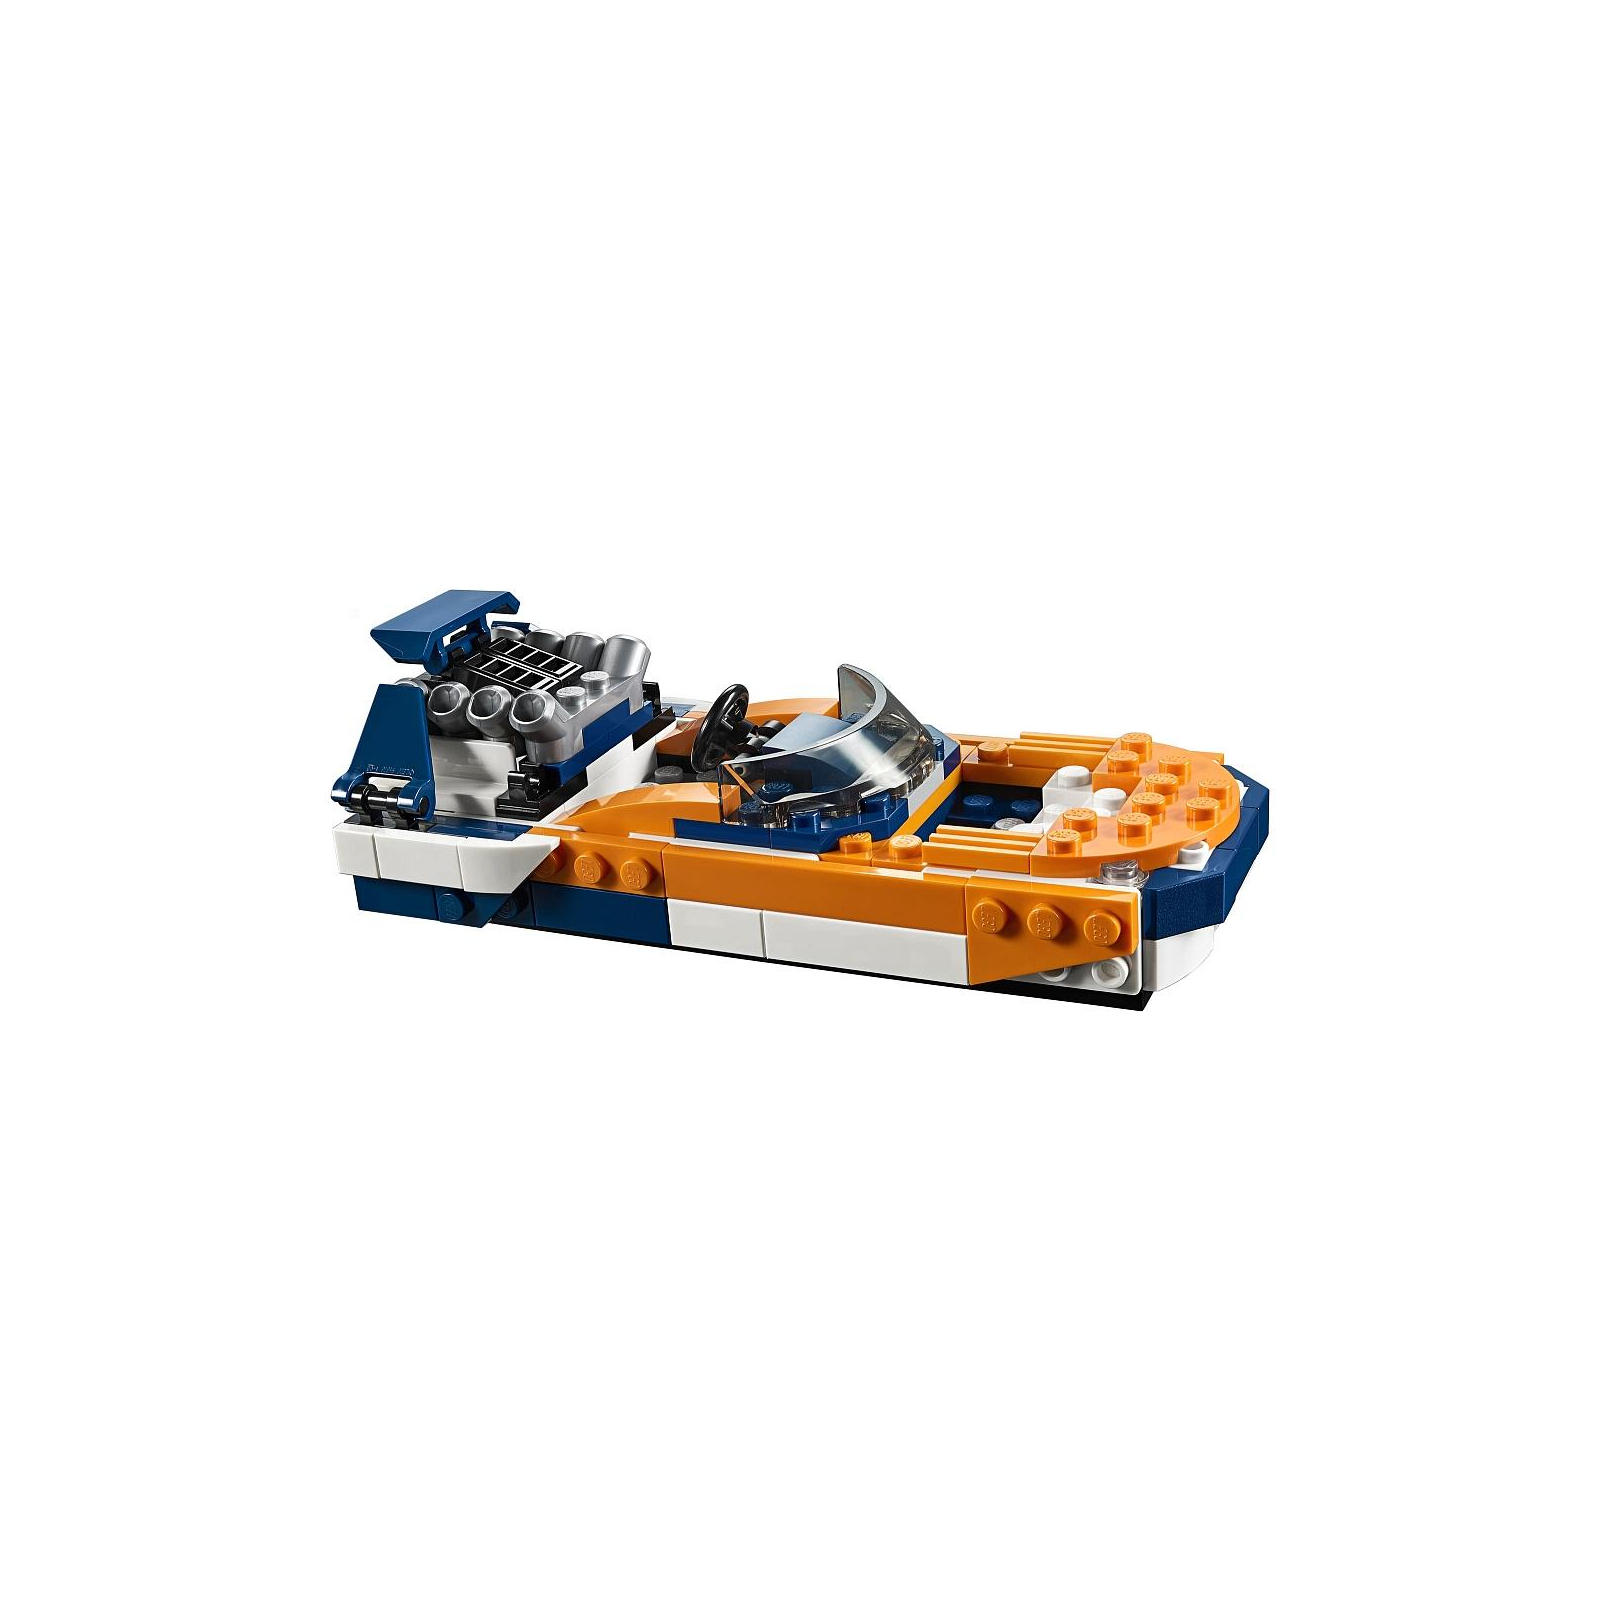 Конструктор LEGO Creator Оранжевый гоночный автомобиль 221 деталь (31089) изображение 8